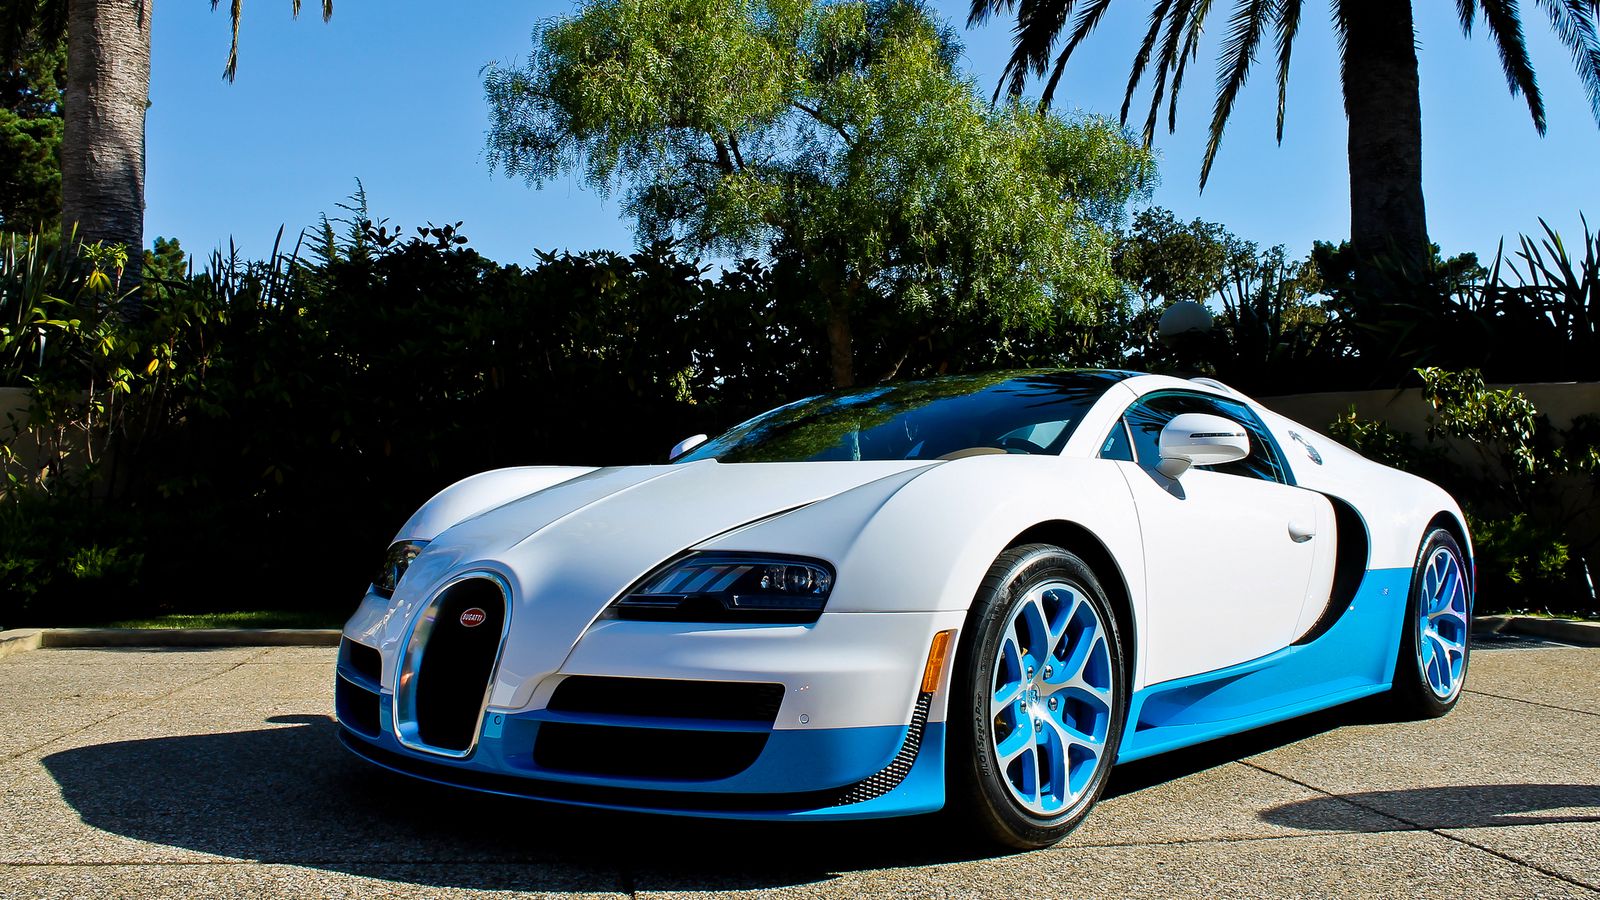 Hãy tải hình nền Bugatti Veyron vitesse màu xanh dương động cơ tay ga 1600x900 để trải nghiệm cảm giác thực sự của việc lái một chiếc siêu xe tốc độ. Với sự kết hợp hoàn hảo giữa màu xanh dương tinh tế và động cơ tay ga mạnh mẽ, chiếc xe này chắc chắn sẽ làm hài lòng những ai yêu thích tốc độ và công nghệ.